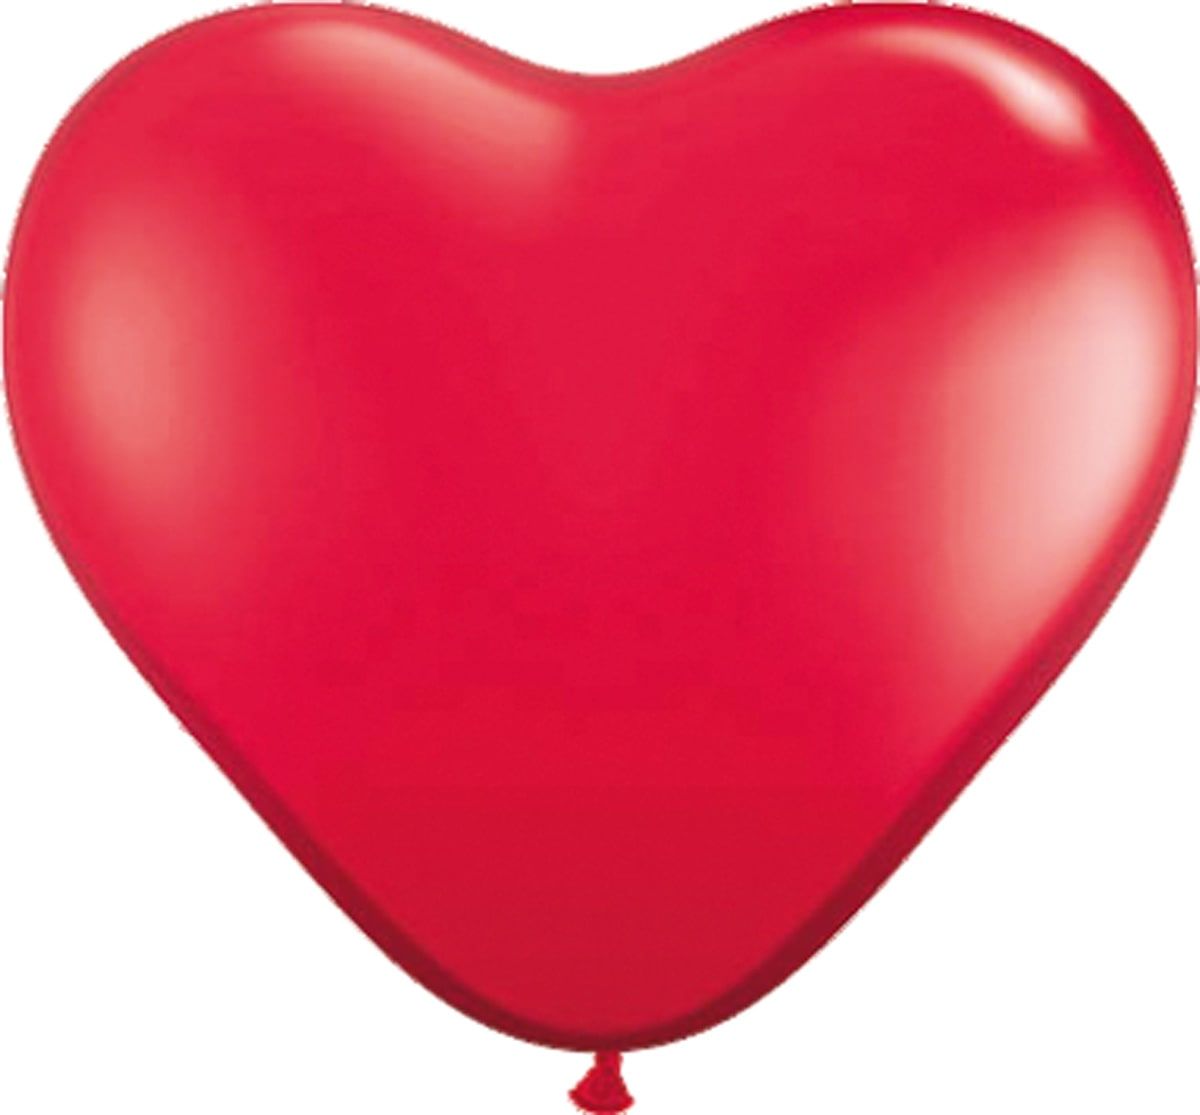 Rode hartvormige ballonnen 8 stuks